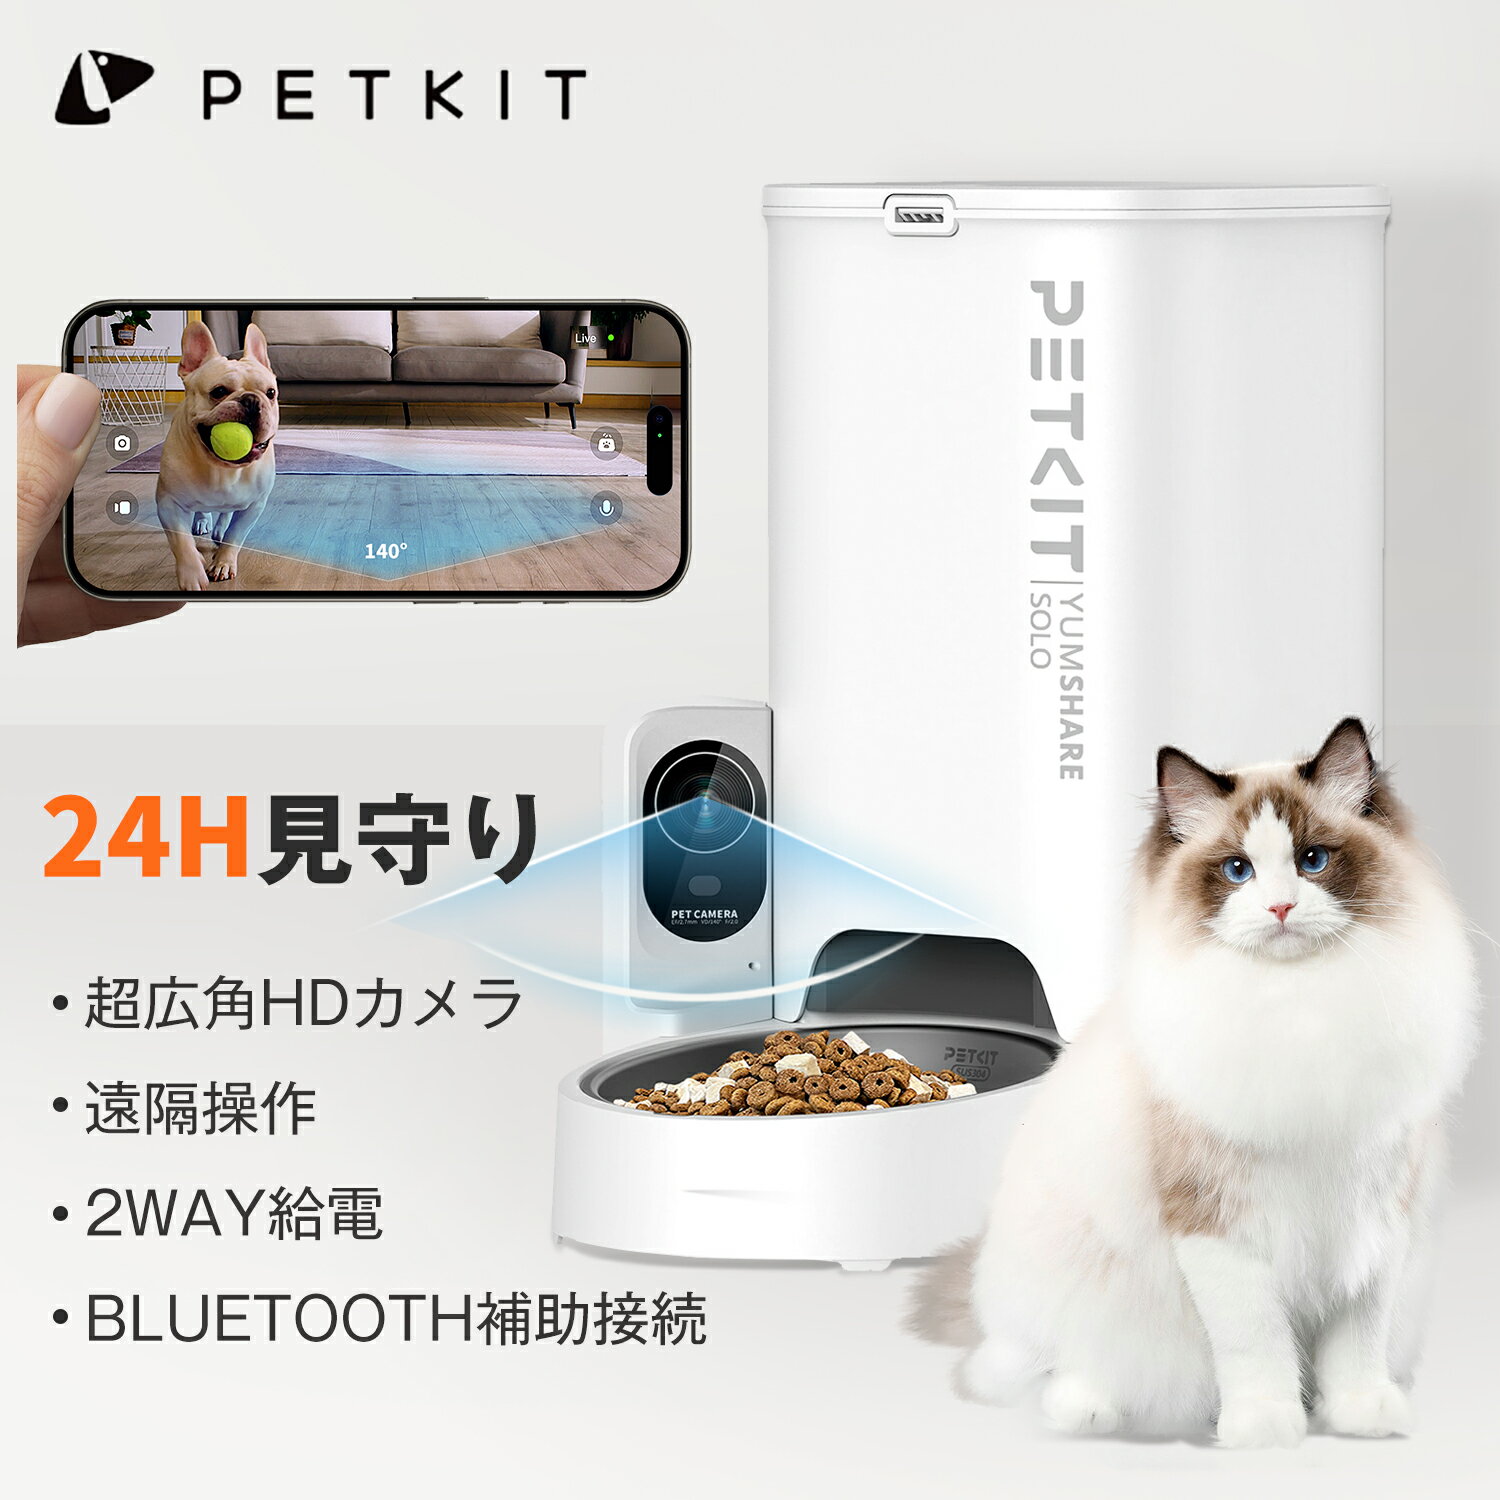 2024モデル PETKIT 自動給餌器 猫 カメラ付き 3L 自動餌やり機 見守りカメラ 遠隔操作 給餌器 猫 中小型犬用 色々な種類のフードに適応 スマホ管理 録画機能付 2WAY給電 ペットキット 日本語対応アプリ SOLO WITH CAMERA 一年保証